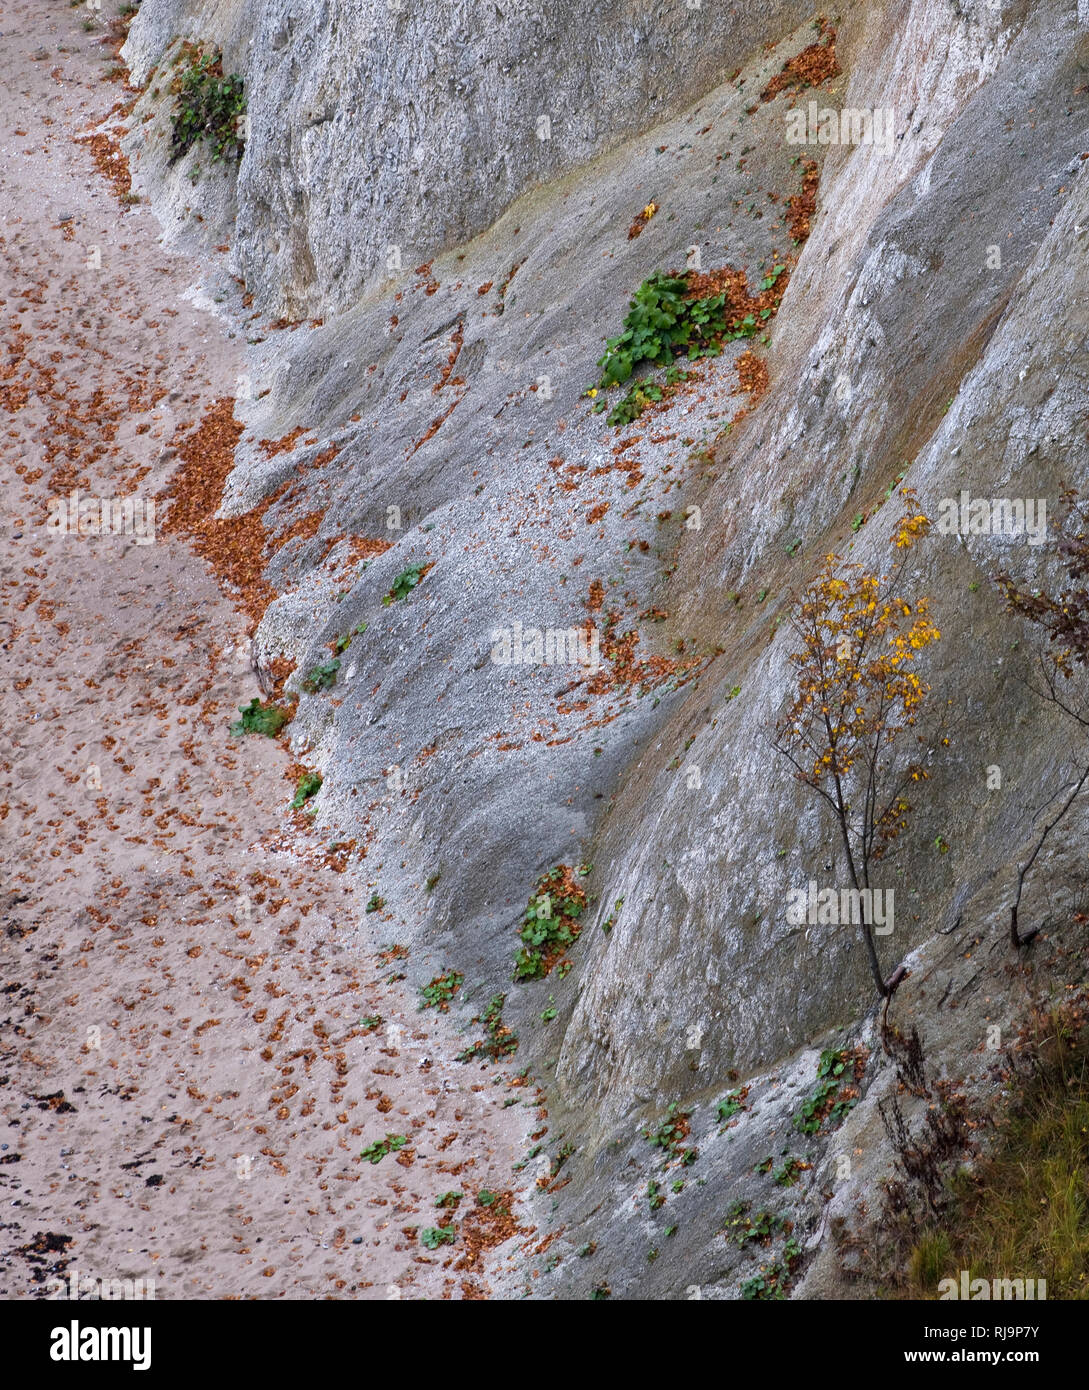 Europa, Deutschland, Mecklenburg-Vorpommern, Insel Rügen, Nationalpark Jasmund, UNESCO-Weltnaturerbe Europäische Buchenwälder, Blick von oben auf Stei Stock Photo